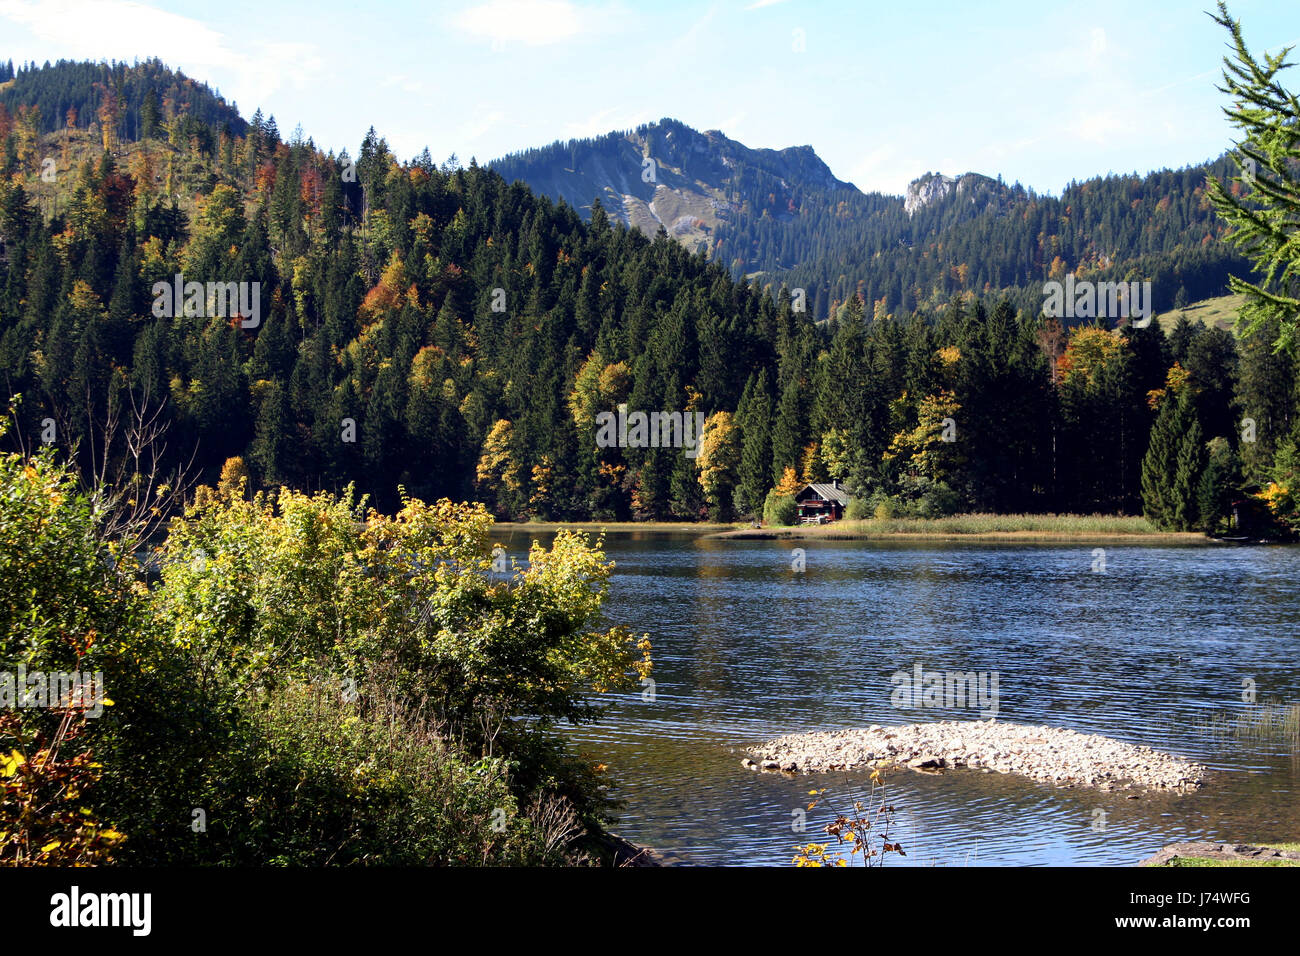 Alpi Baviera montani alpini Germania Repubblica federale tedesca scenario campagna Foto Stock